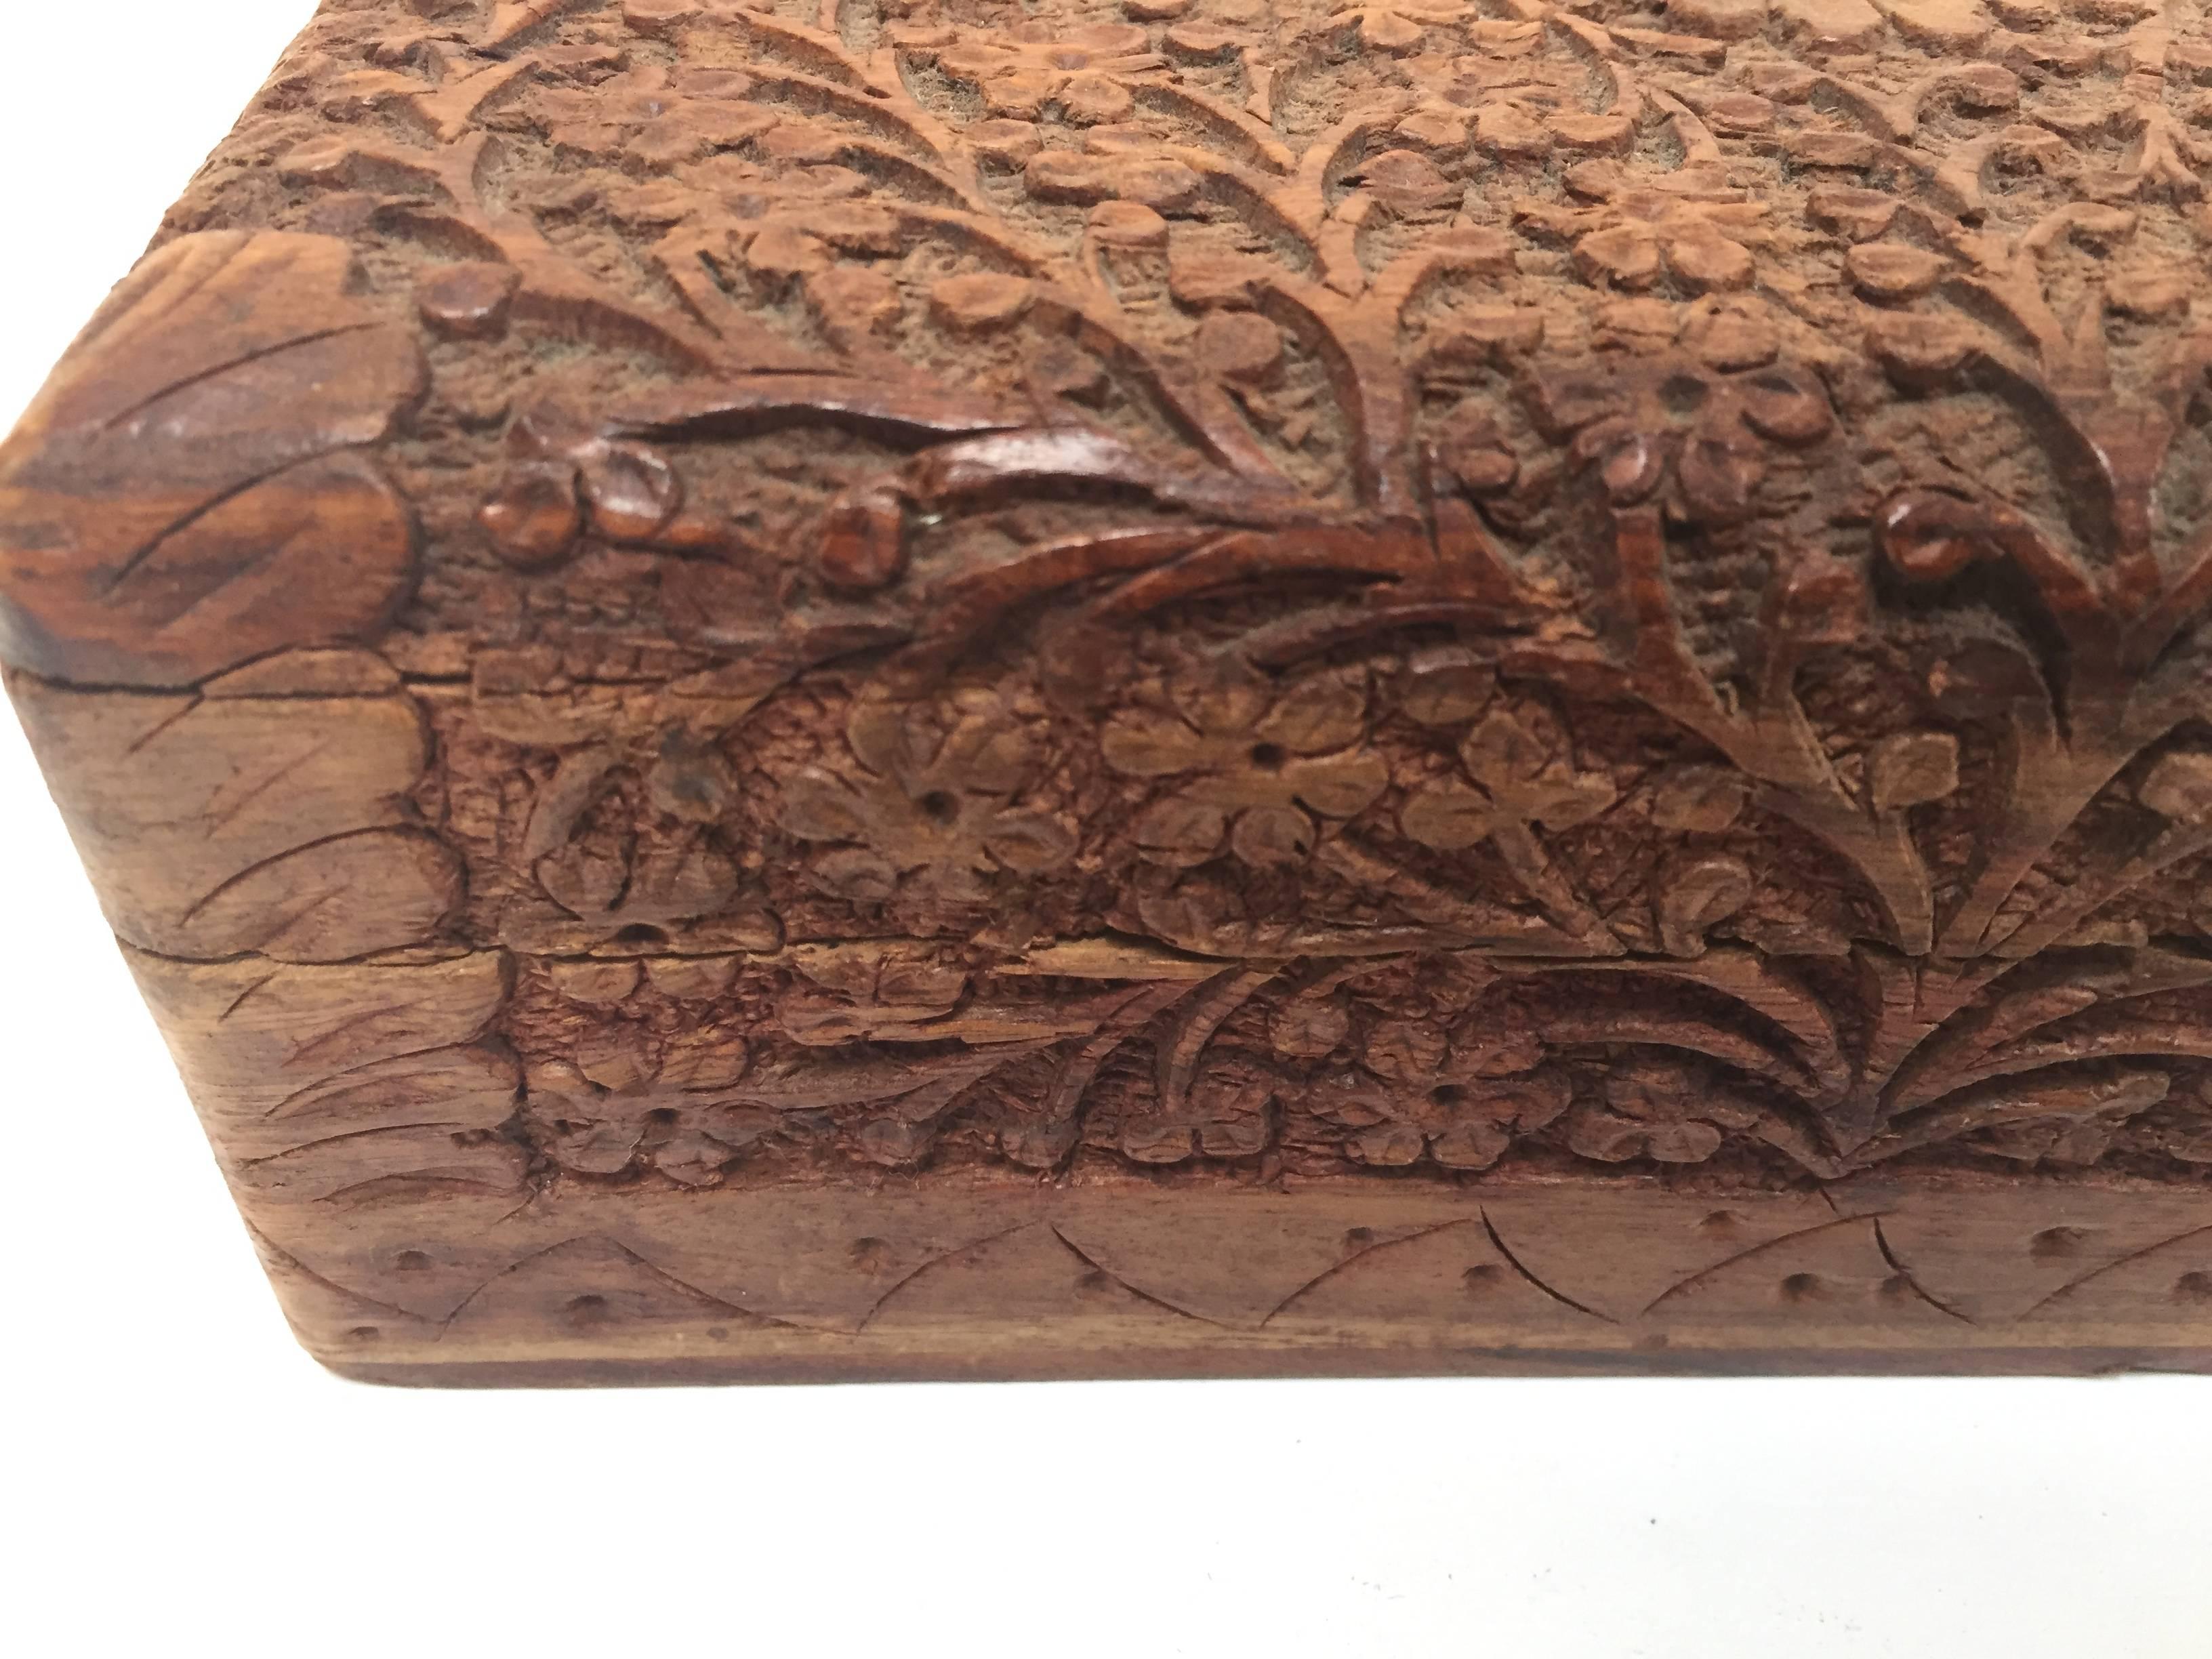 Boîte en bois sculpté Anglo Raj du début du 20e siècle, richement décorée dans son ensemble d'arabesques et de sculptures florales.
Le couvercle à charnière présente une sculpture en relief peu profonde et l'intérieur est tapissé de velours rouge